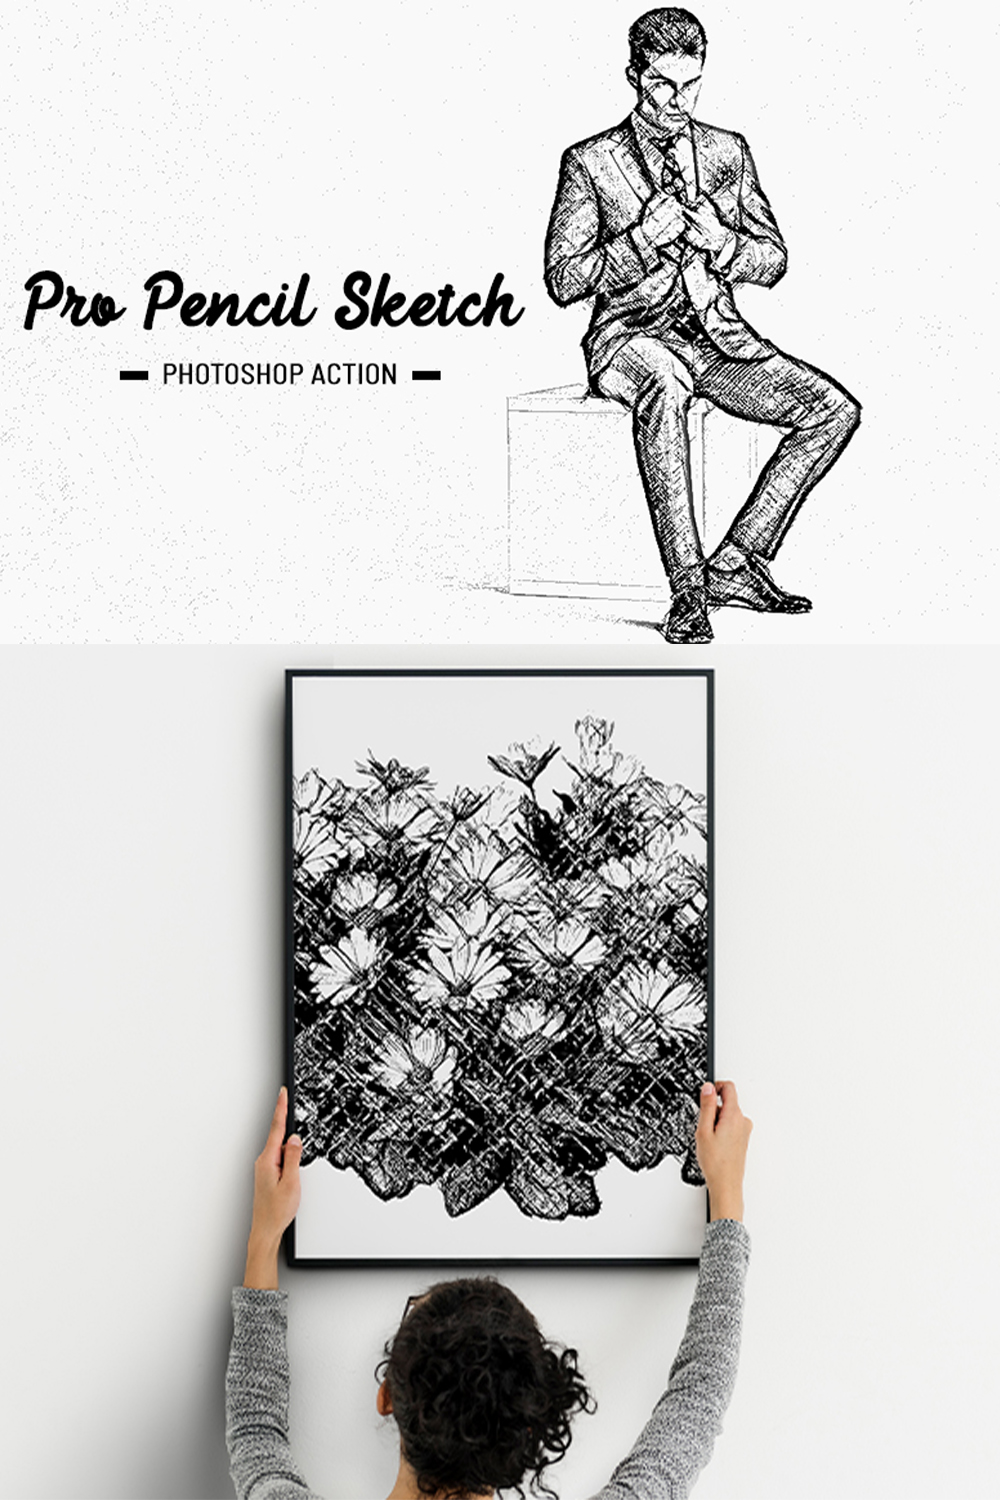 Pro Pencil Sketch Photoshop Action pinterest preview image.